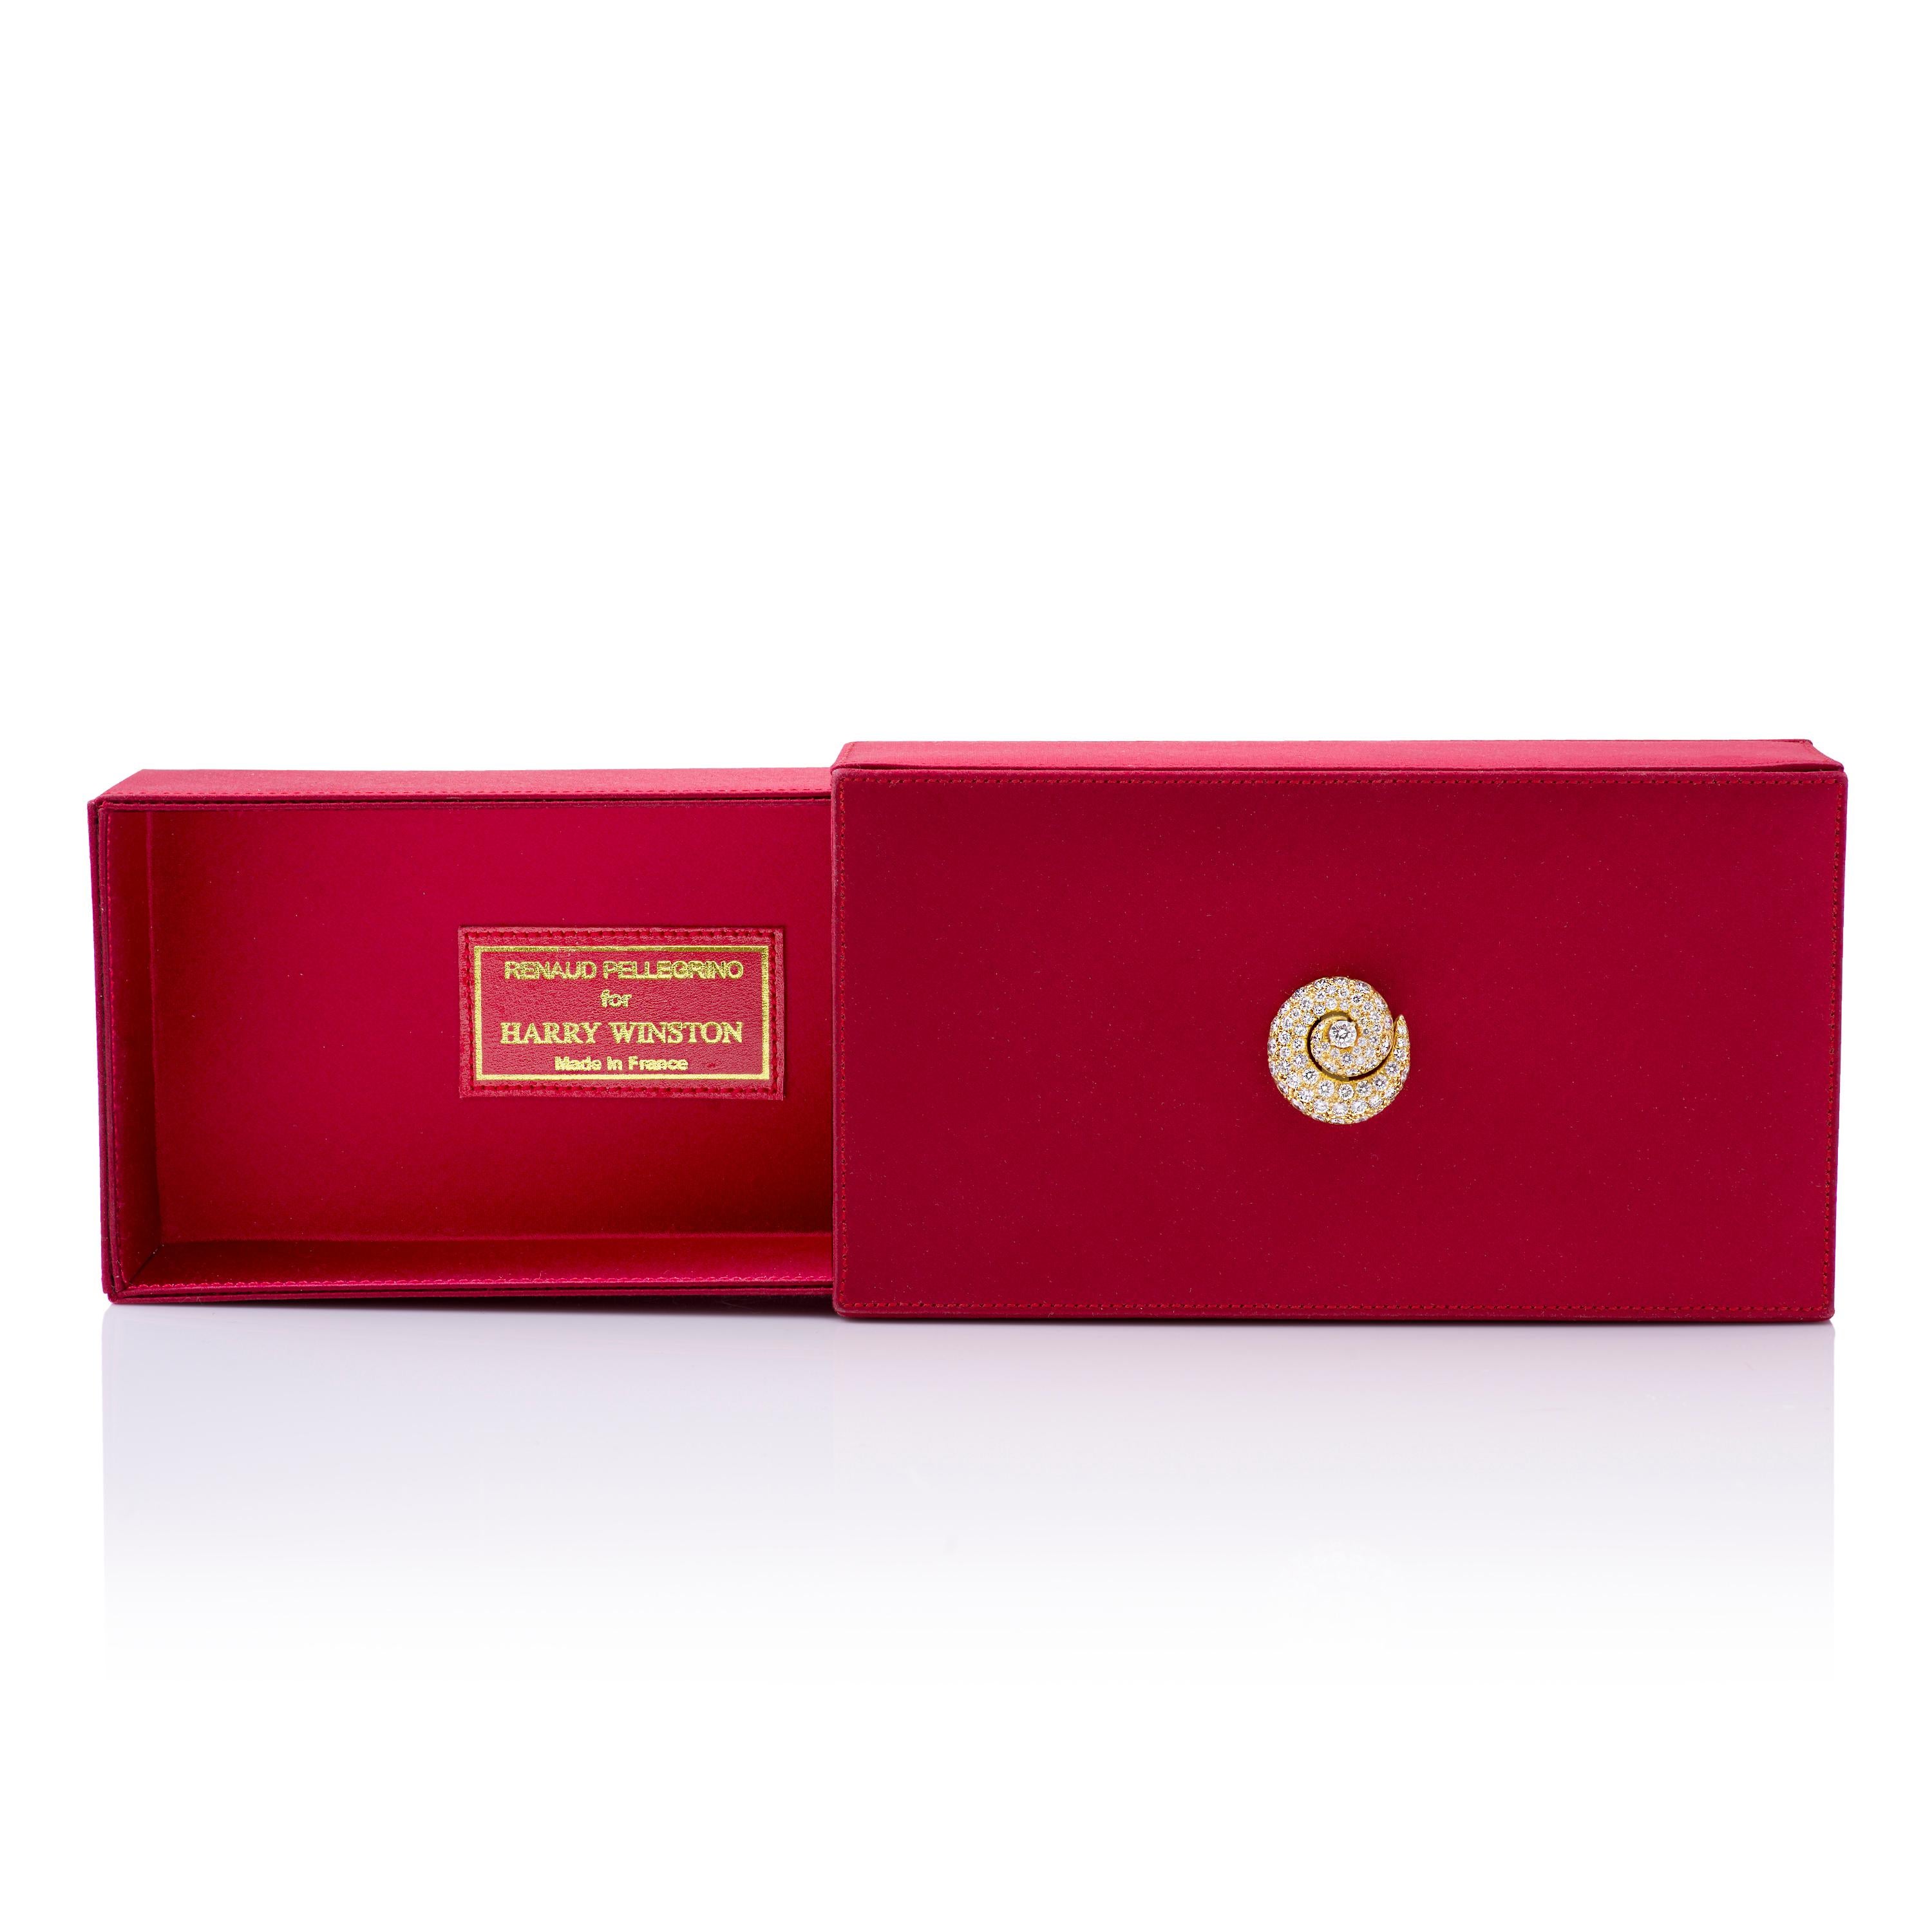 Boîte de soirée vintage Renaud Pelligrino pour Harry Winston en satin rouge avec accent en or jaune 18k et diamants, pouvant être utilisée comme pochette ou boîte à bijoux.  

Cette pochette présente un tourbillon orné en or jaune 18k, serti